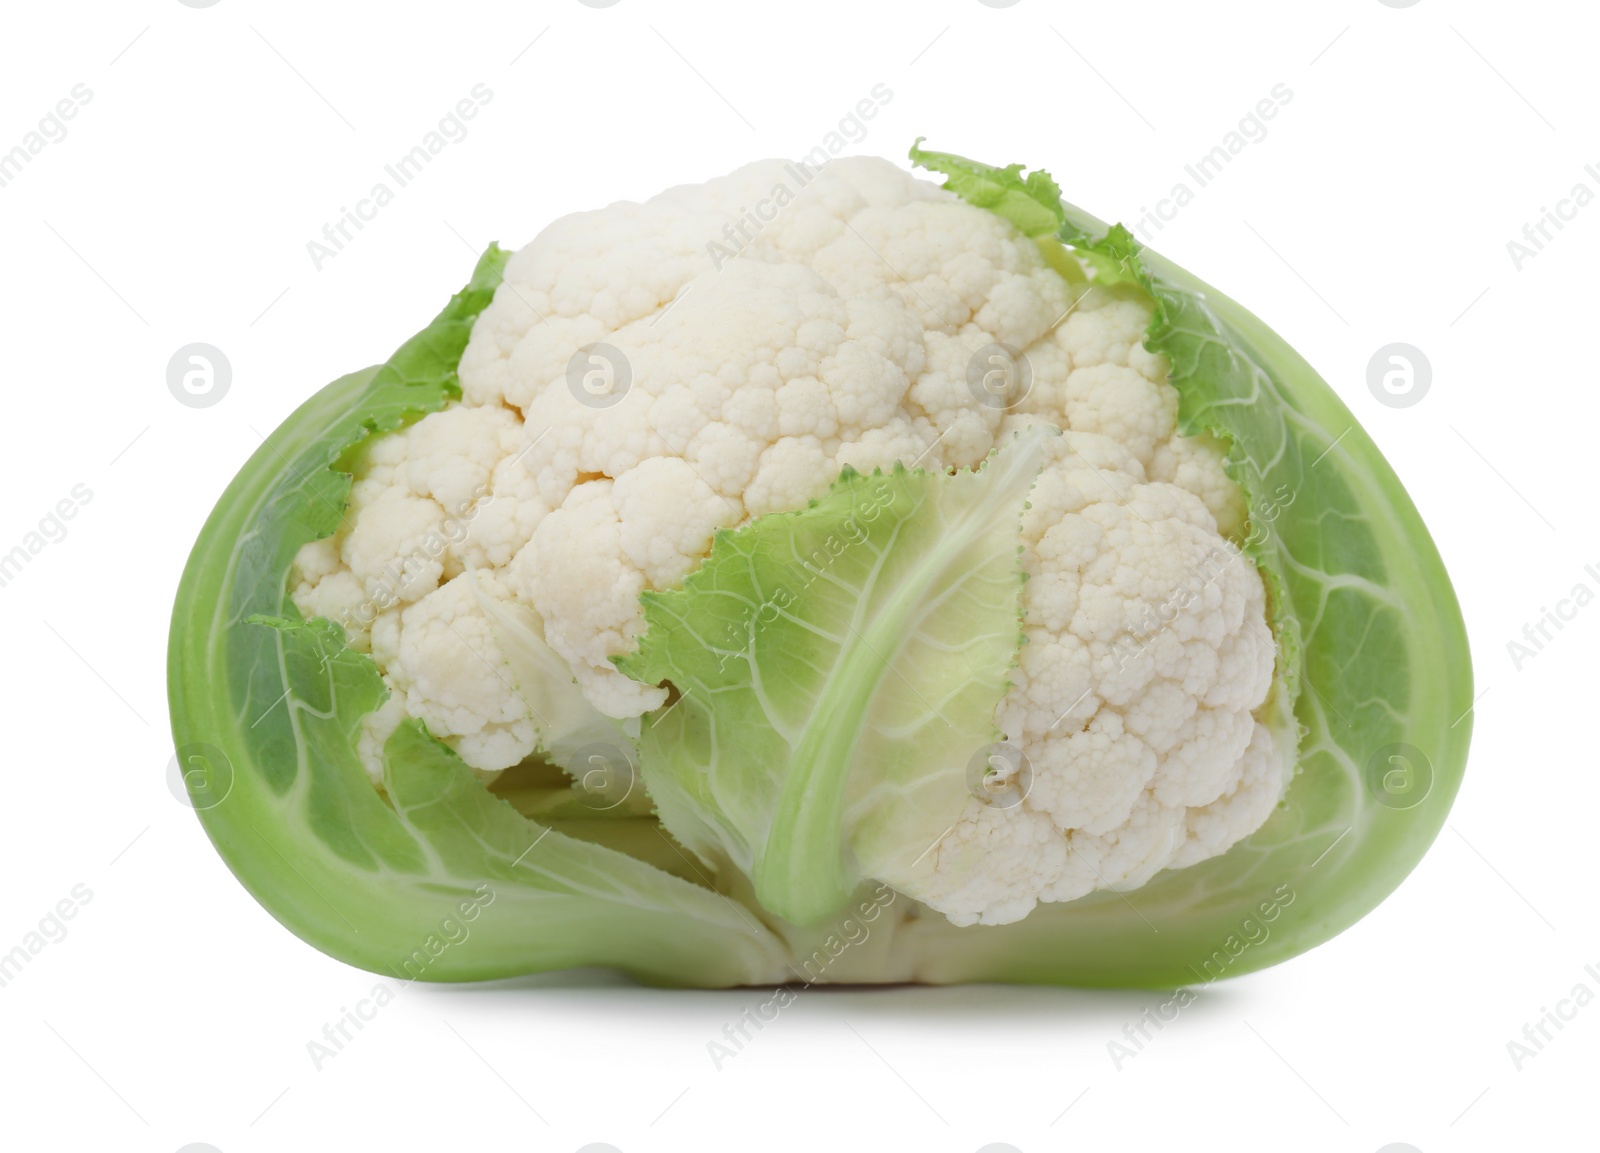 Photo of Whole fresh raw cauliflower on white background